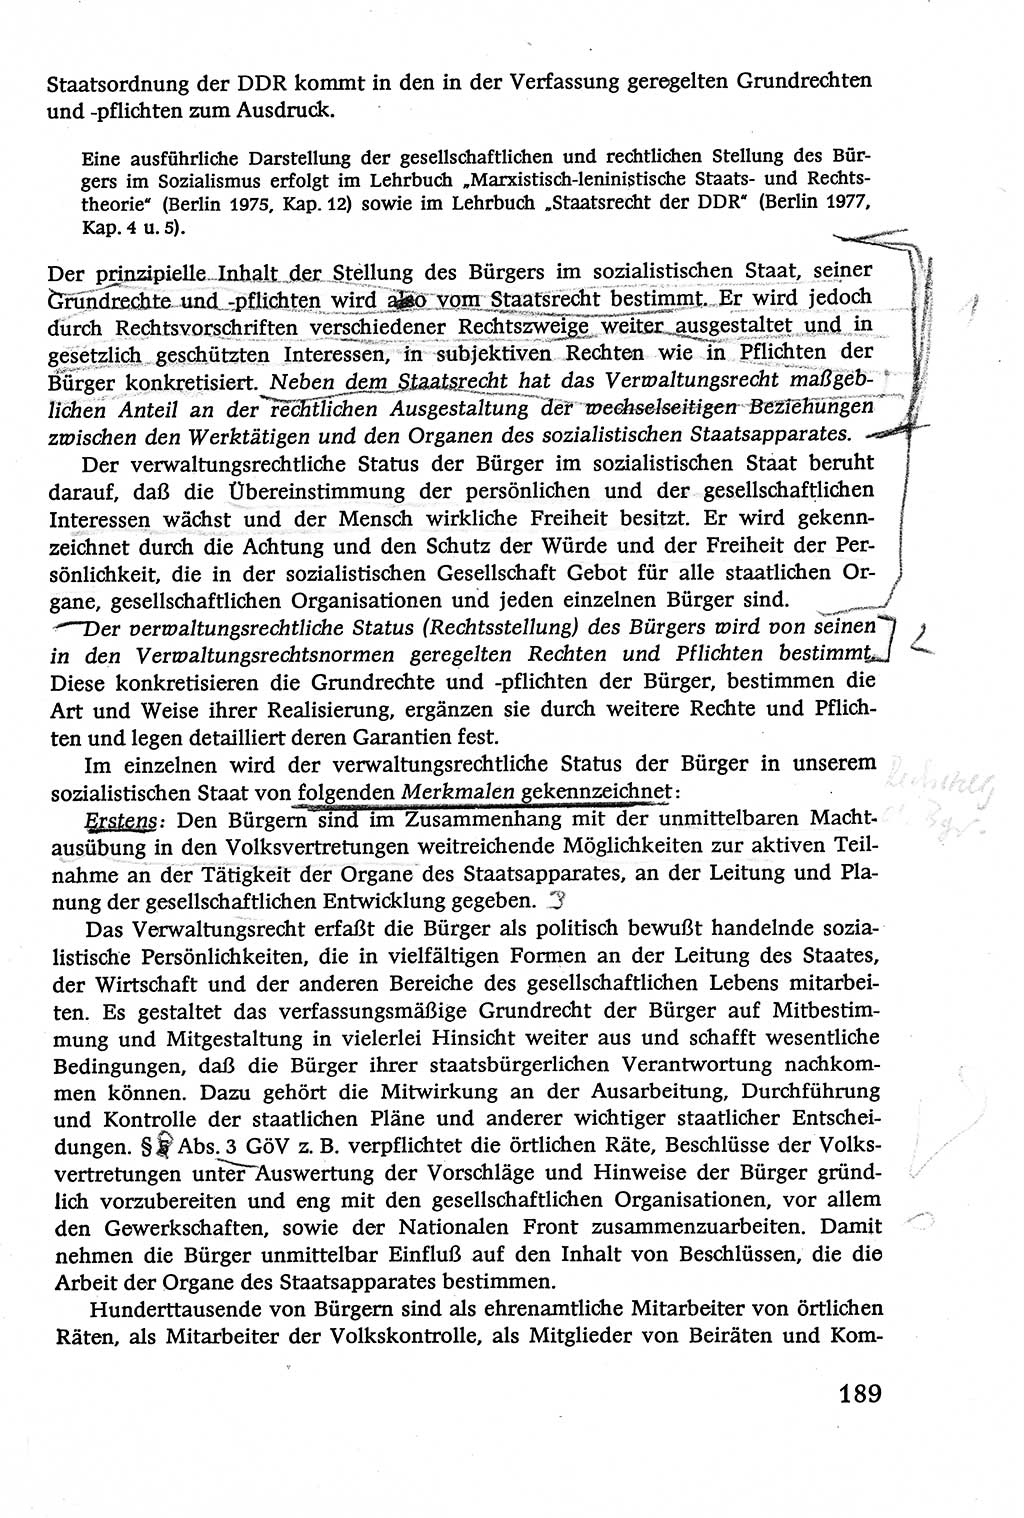 Verwaltungsrecht [Deutsche Demokratische Republik (DDR)], Lehrbuch 1979, Seite 189 (Verw.-R. DDR Lb. 1979, S. 189)